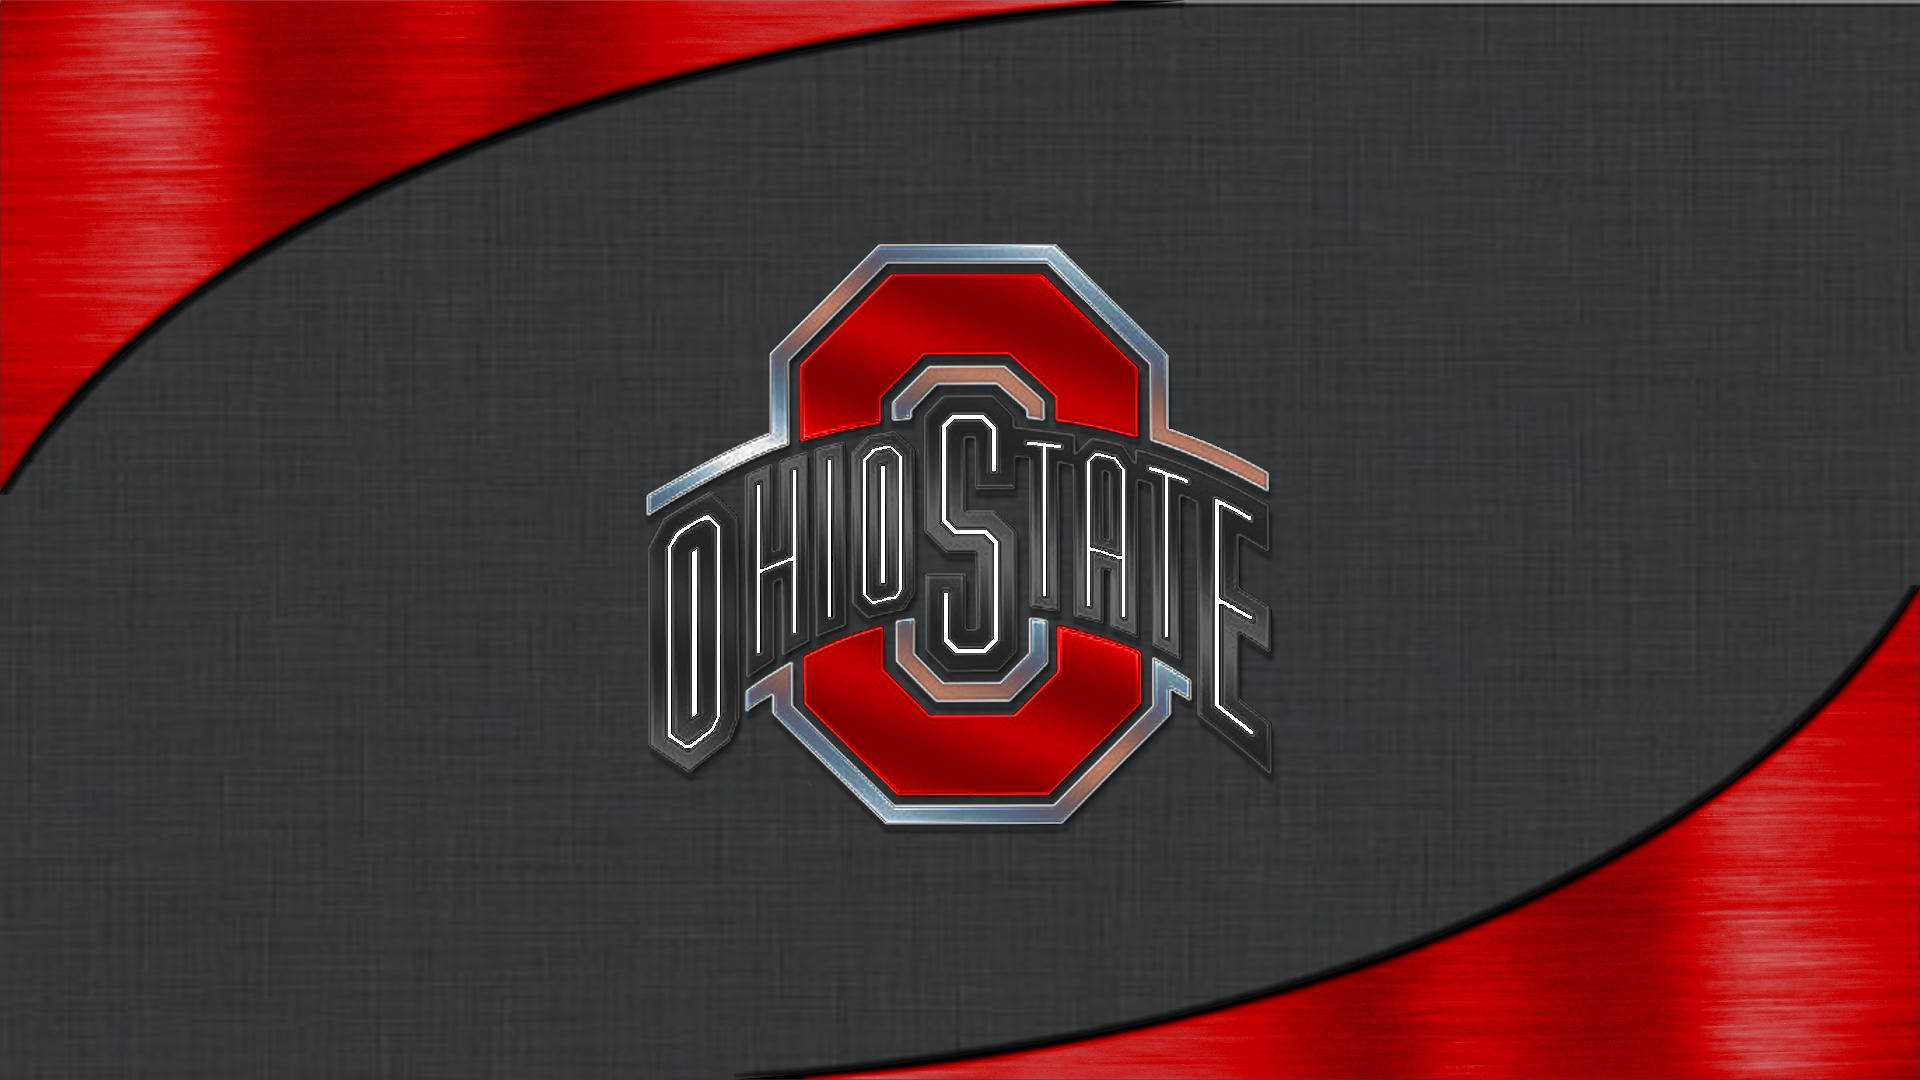 Ohio State University Dark Gray And Red Wallpaper